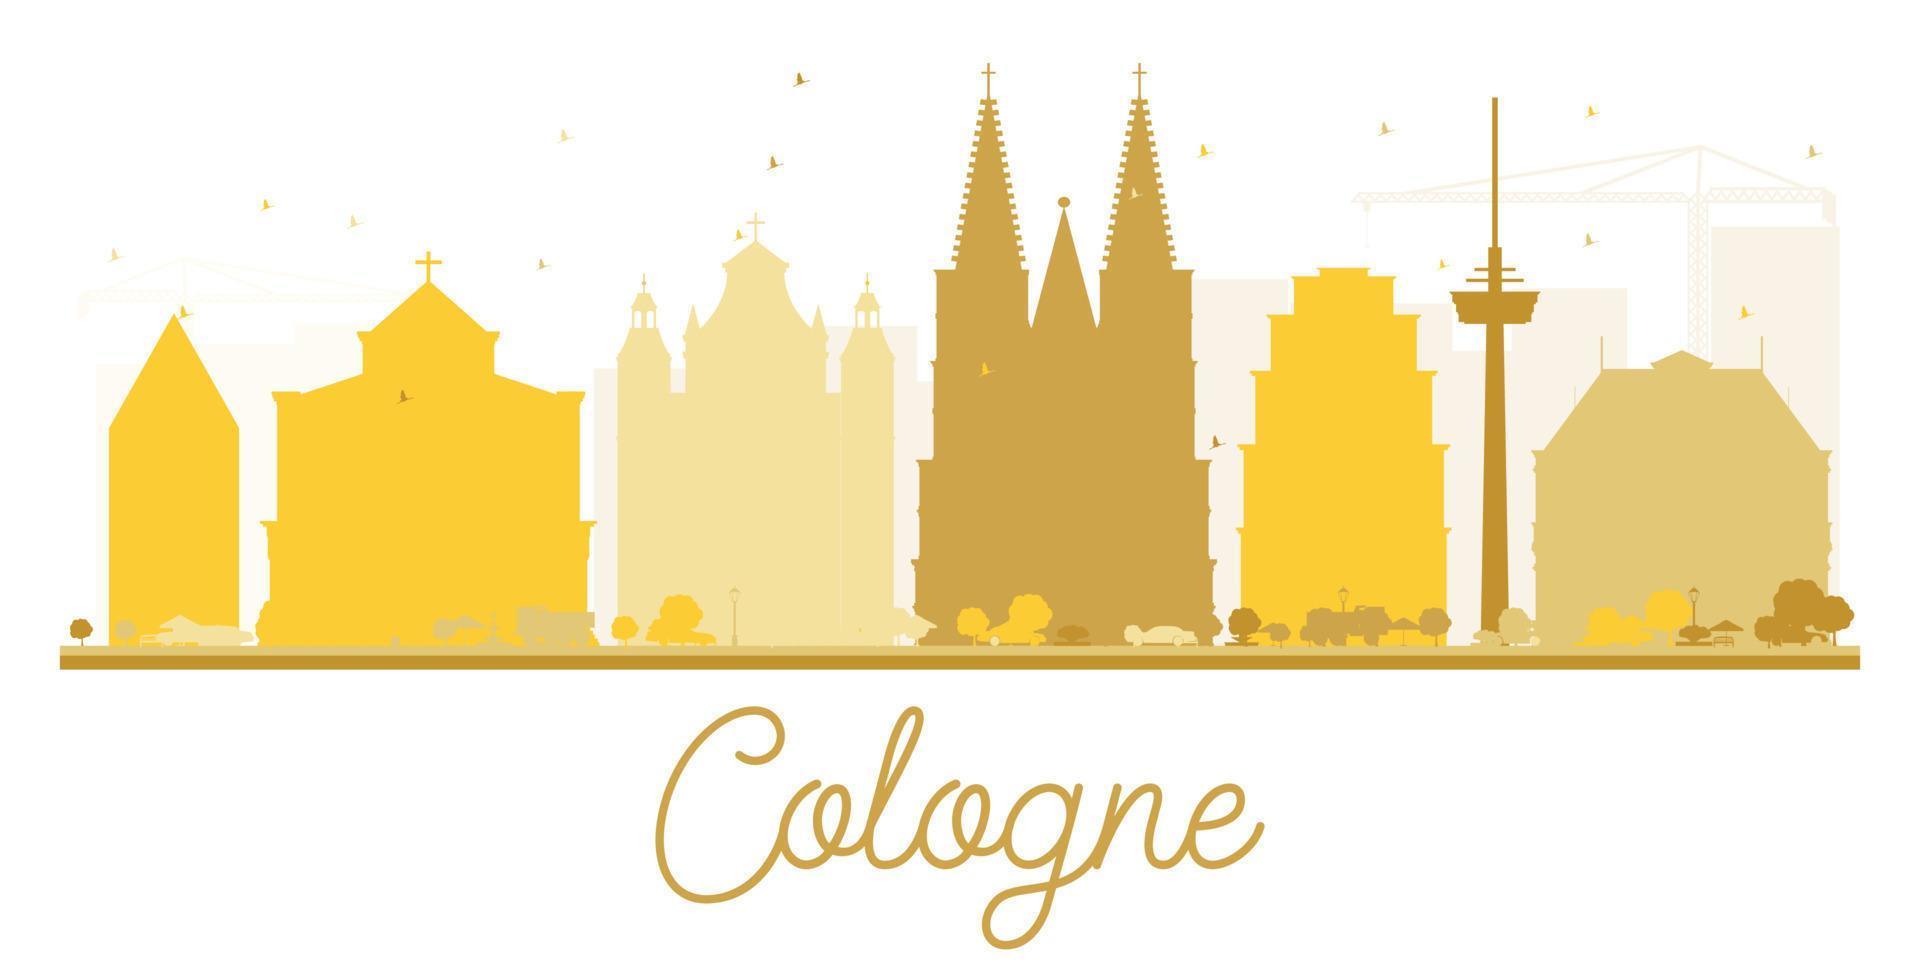 silueta dorada del horizonte de la ciudad de colonia. vector